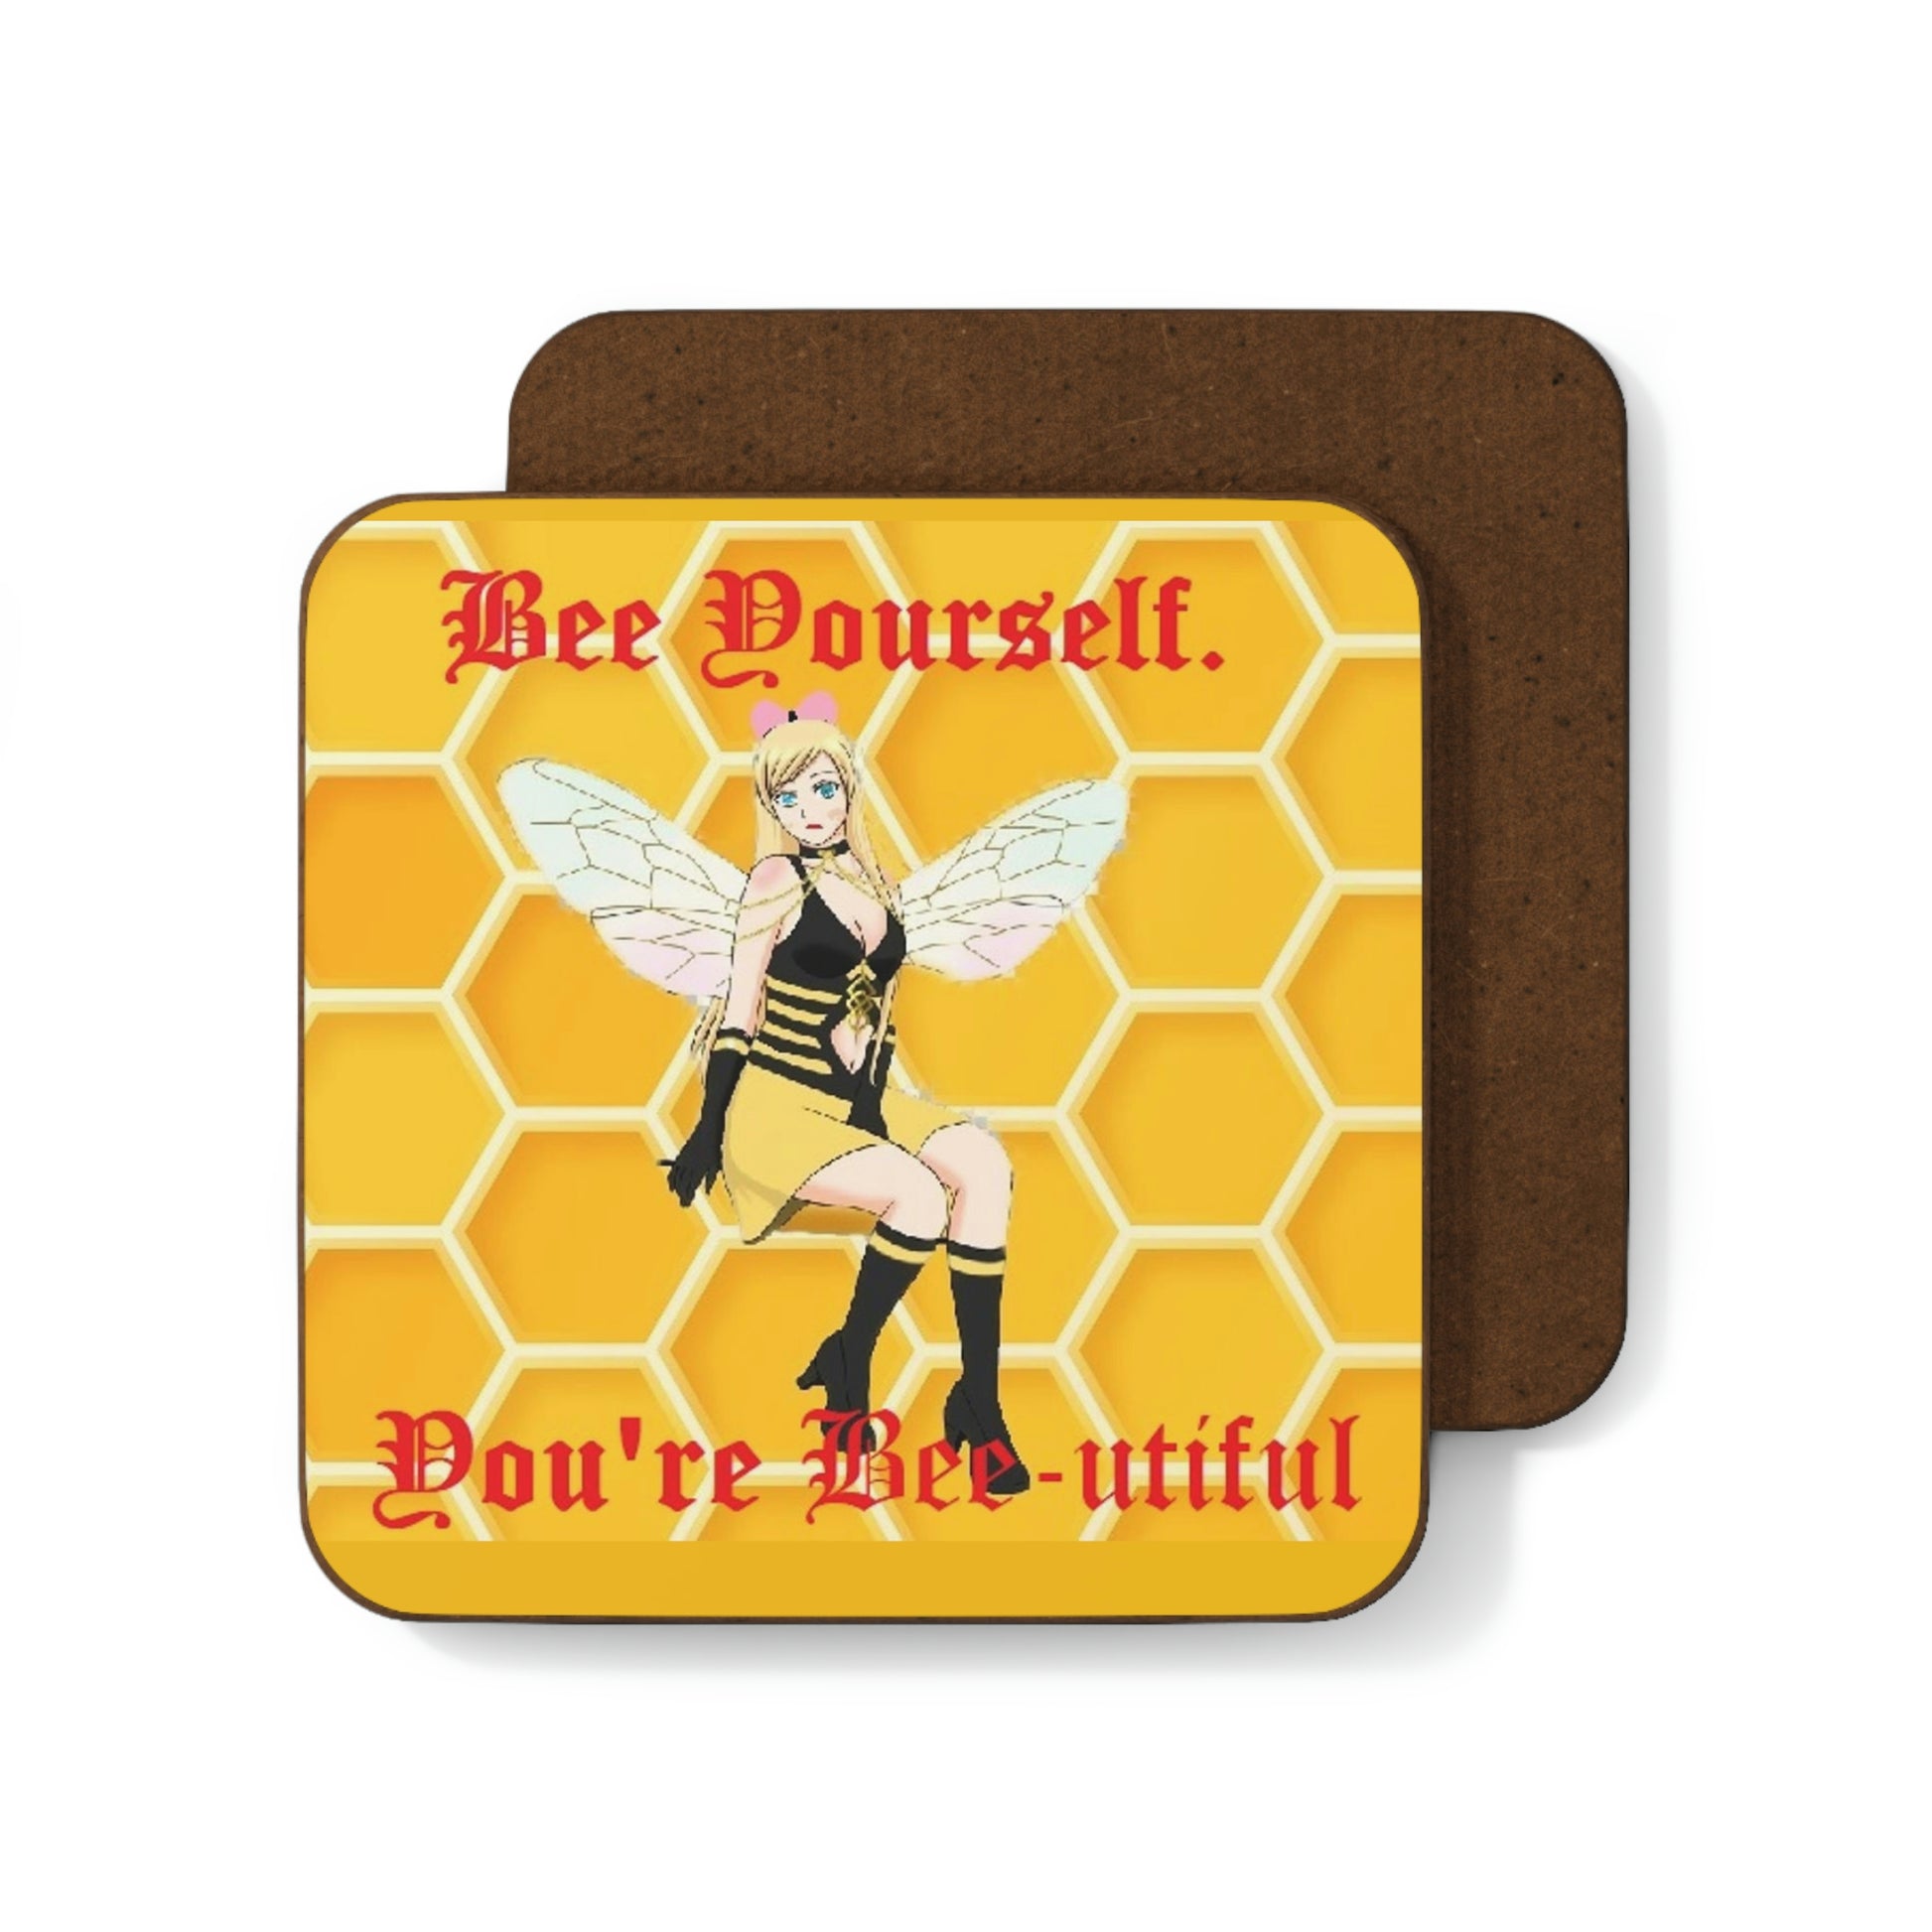 Bee Yourself Hardboard Back Coaster